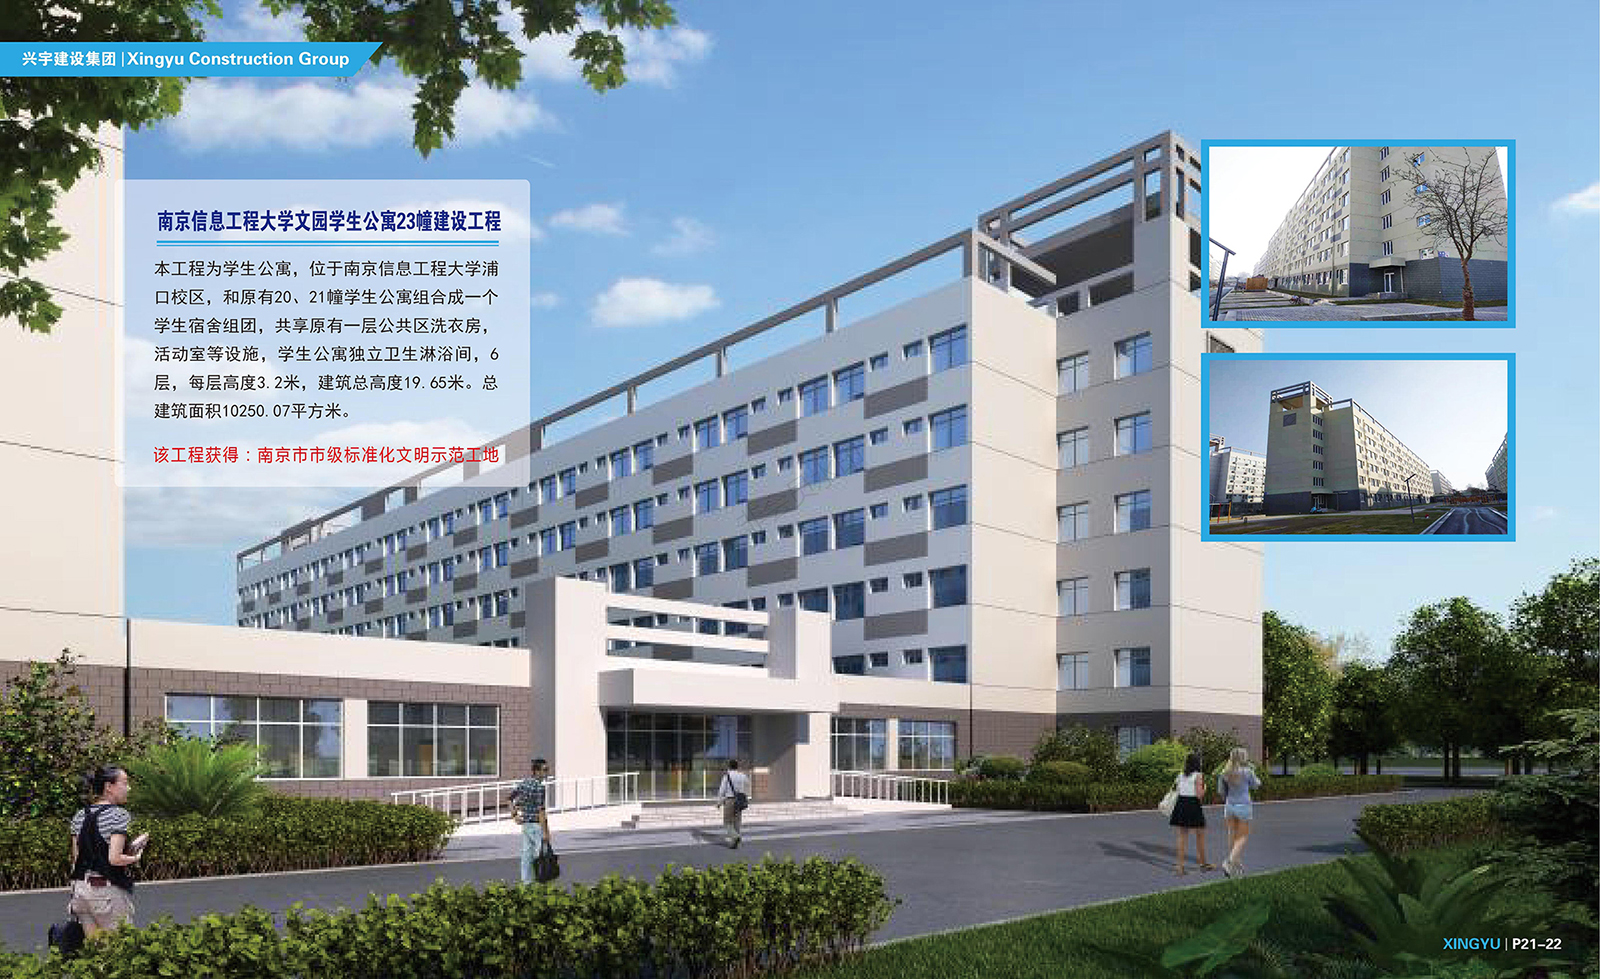 南京信息工程大学文园学生公寓23幢建设工程